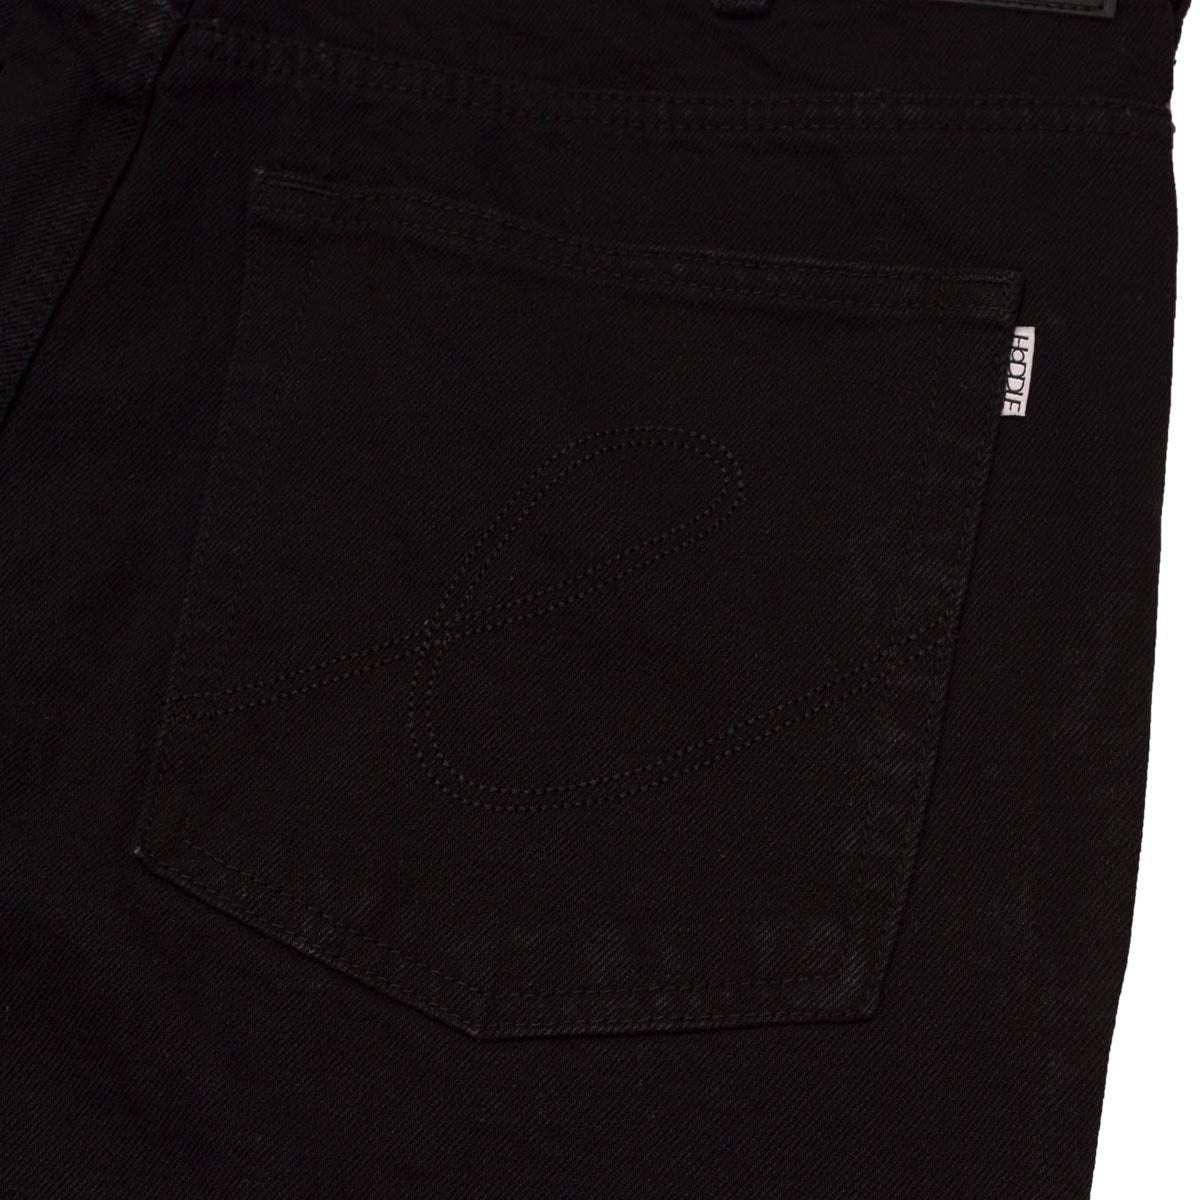 Hoddle 16oz Denim Ranger Shorts - Black image 5